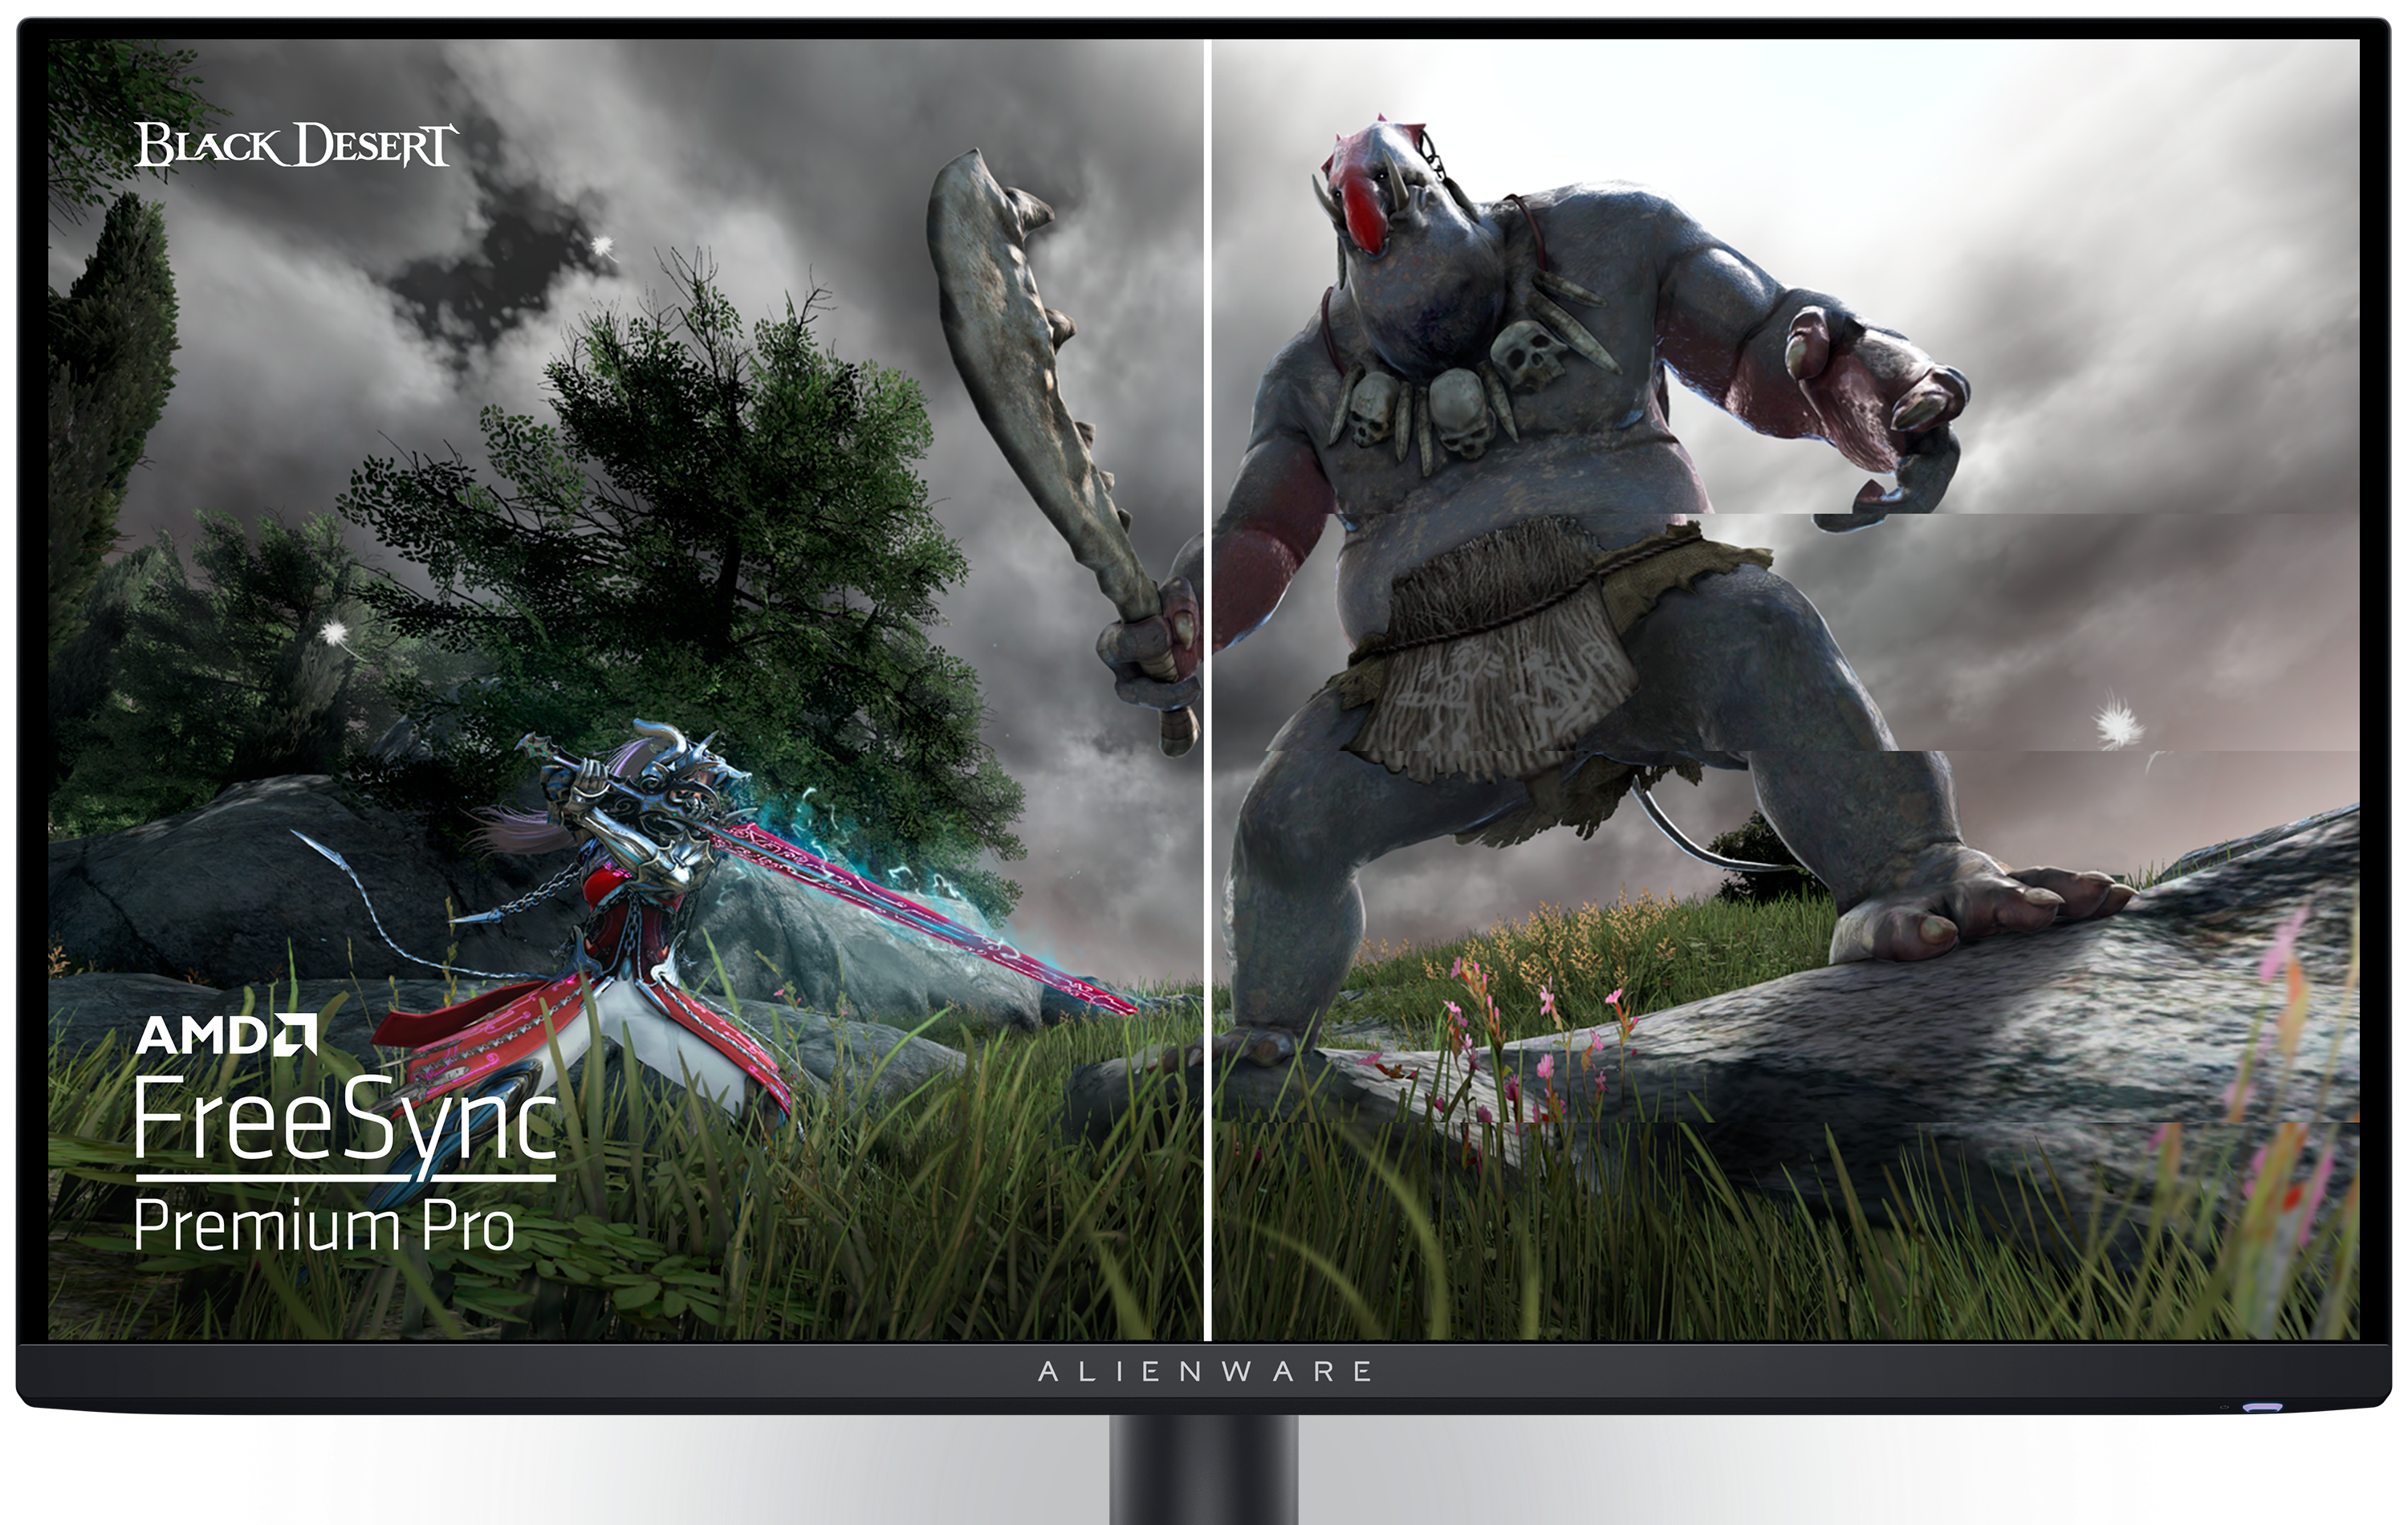 Dell AW2725DF-gamingskærm med et spilbillede fra spillet Black Desert og et AMD-logo på skærmen.